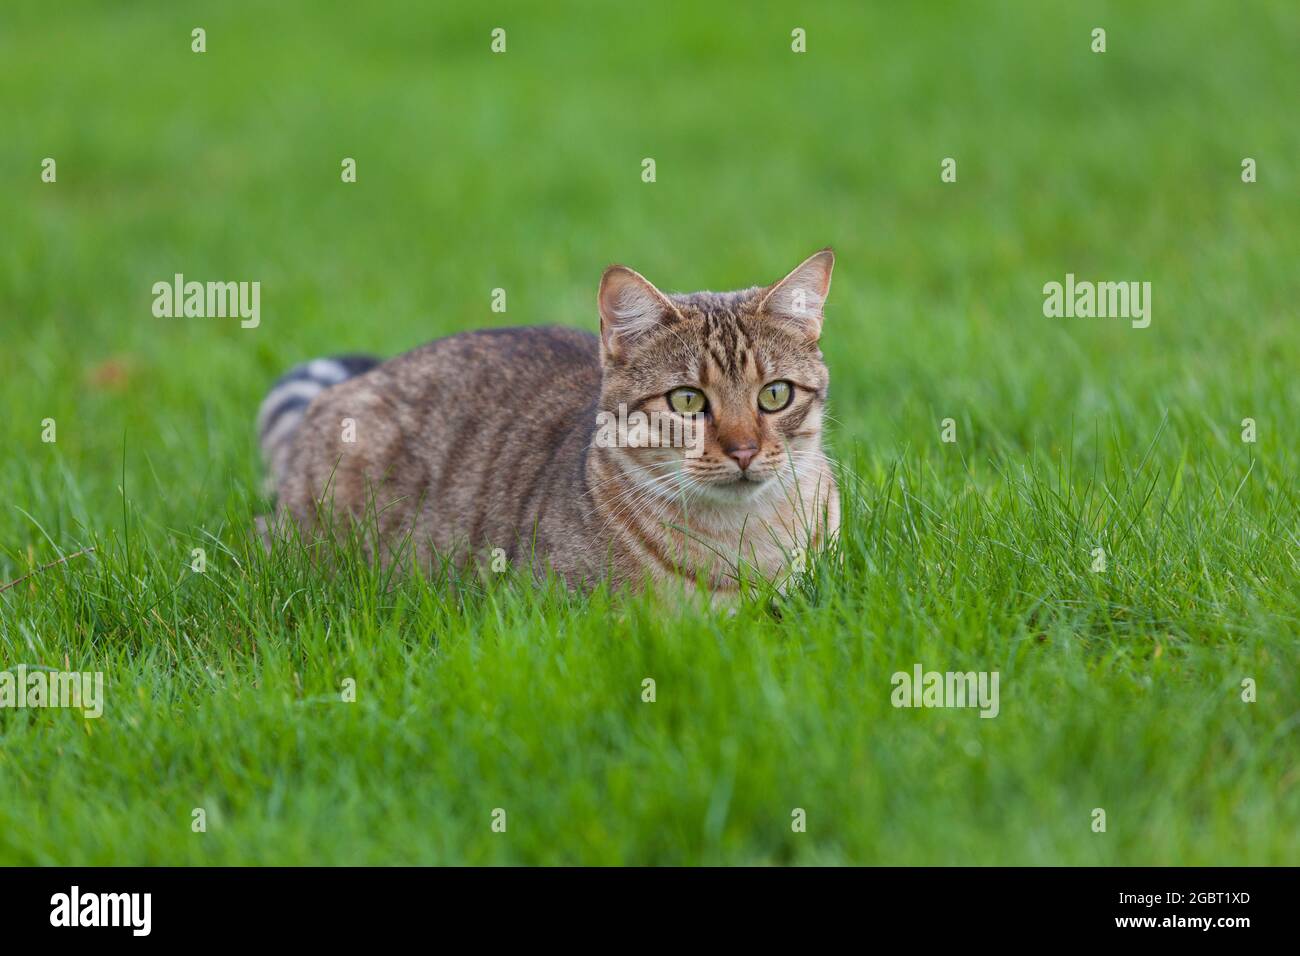 Getigerte Katze auf einer grünen Wiese Stock Photo